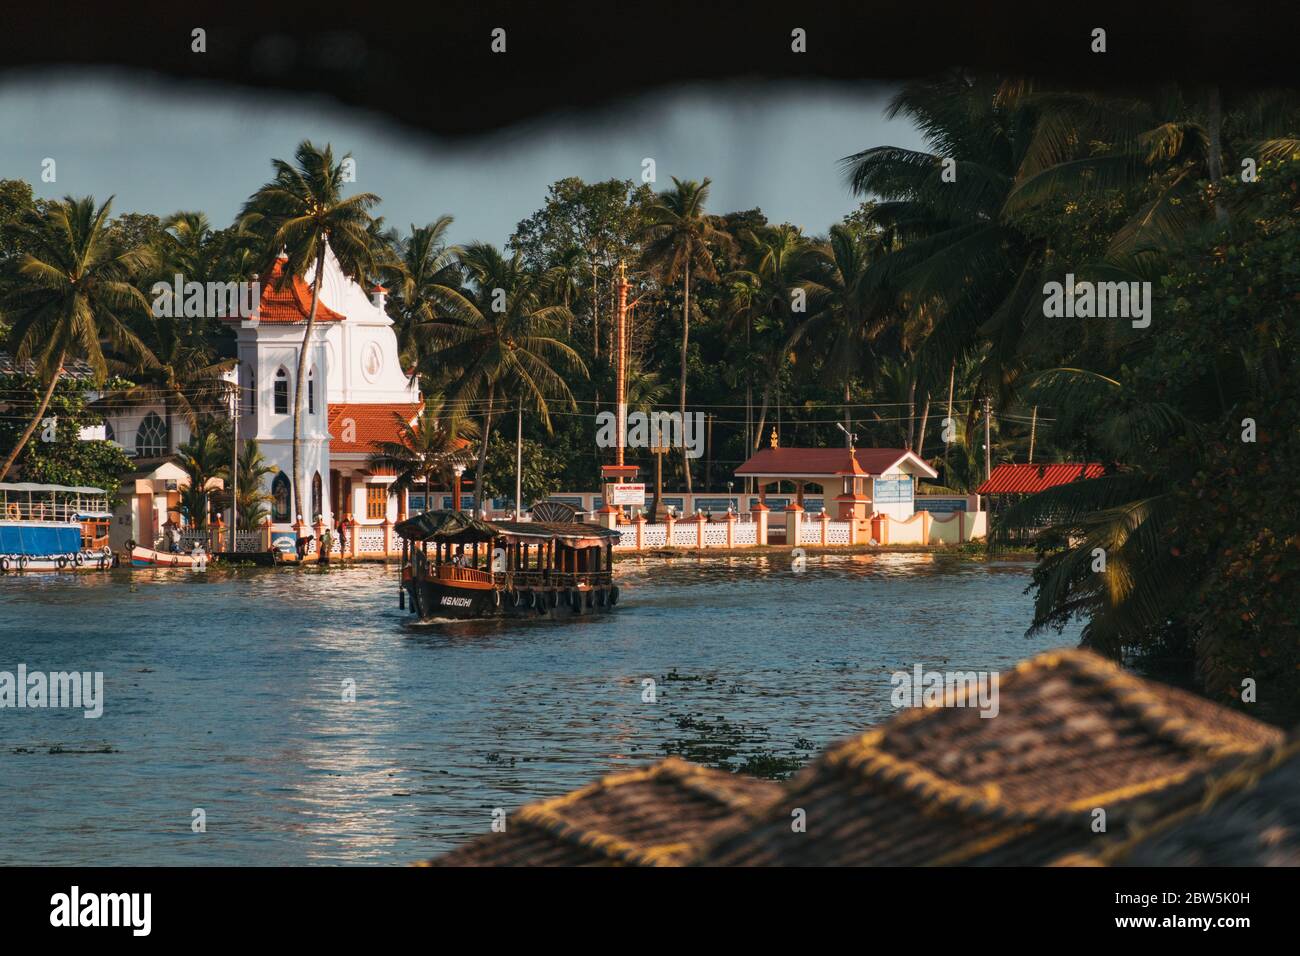 Une péniche dévie devant une petite église chrétienne sur les rives des eaux du Kerala en Inde Banque D'Images